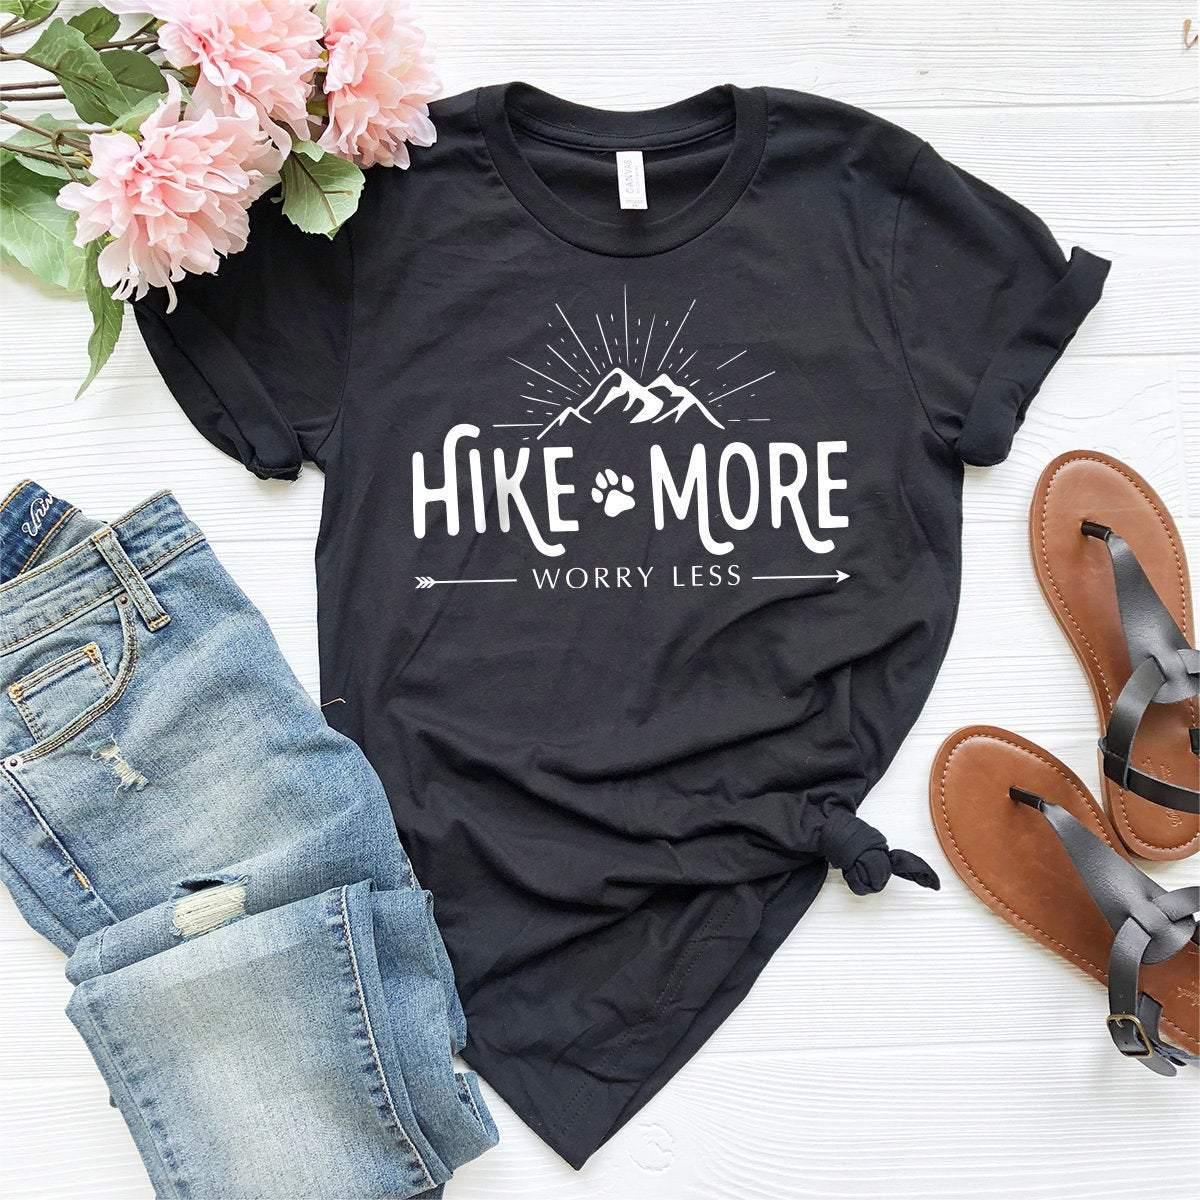 Hiking Shirt,Camping Shirt,Adventure Shirt,Climbing Shirt,Camper Shirt,Hike More Worry Less Shirt,Wanderlust Shirt, - Fastdeliverytees.com